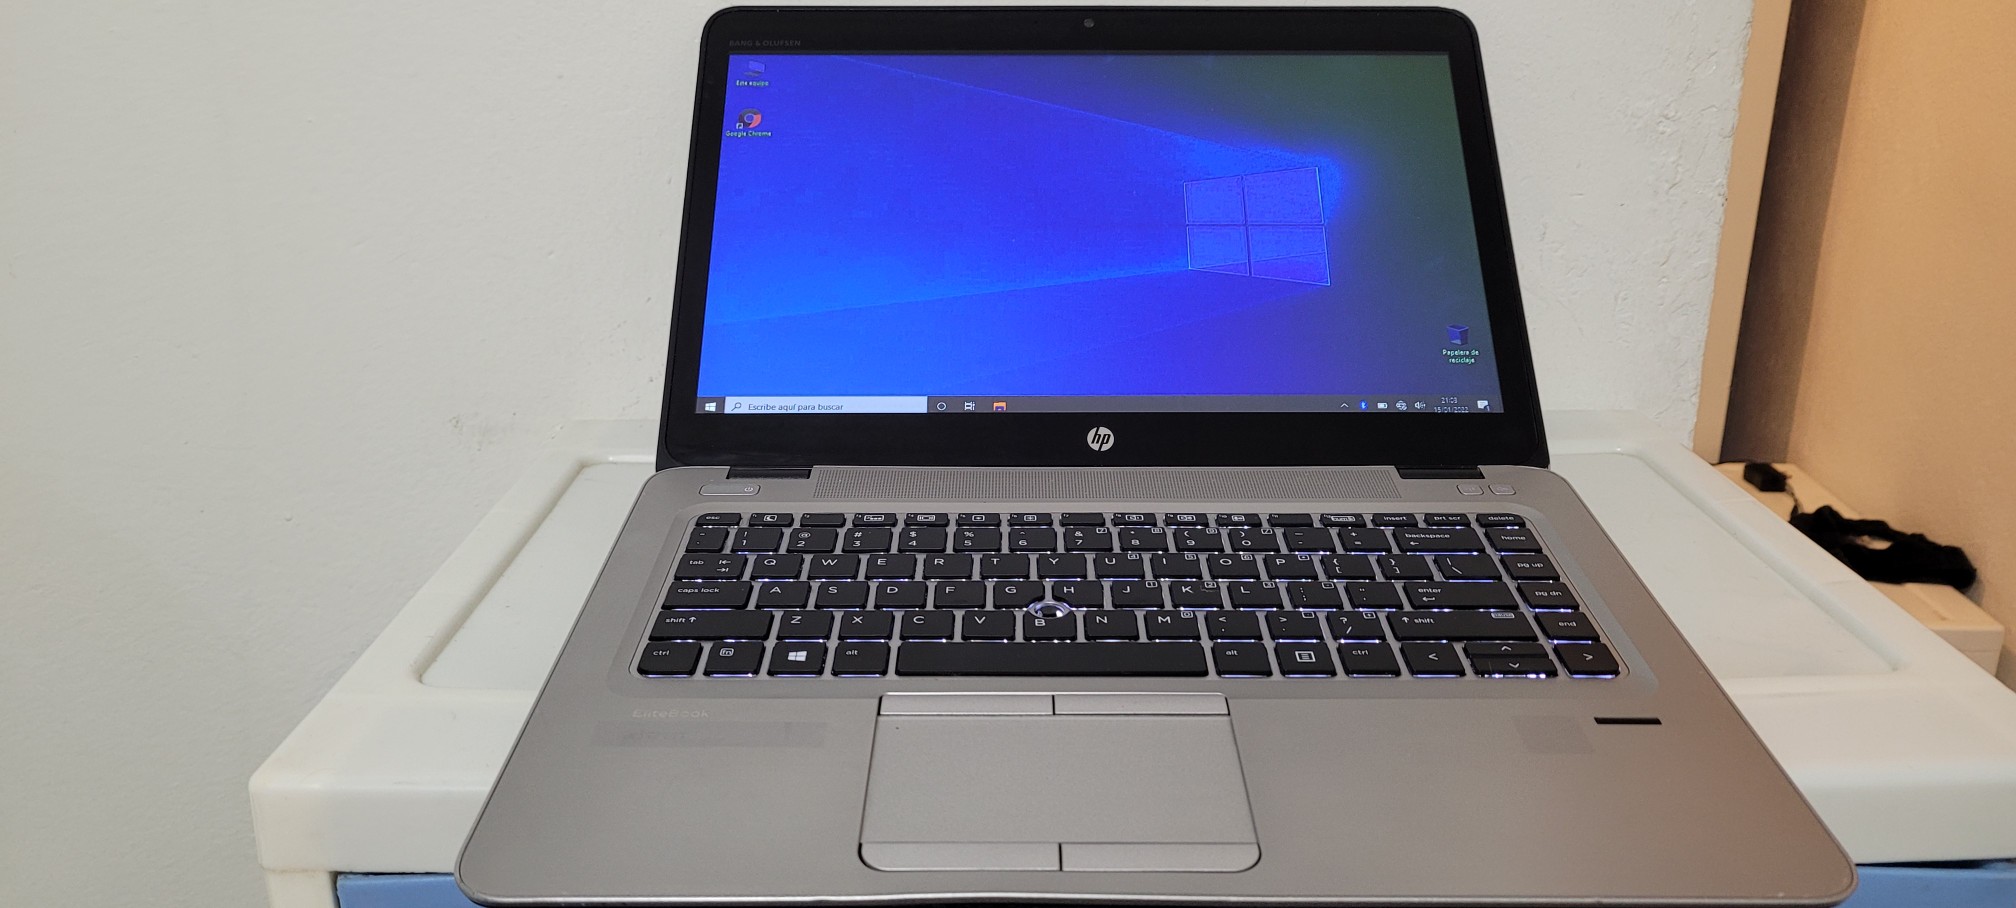 computadoras y laptops - Laptop hp folio 14 Pulg Core i7 Ram 8gb Disco 500gb teclado iluminado 0